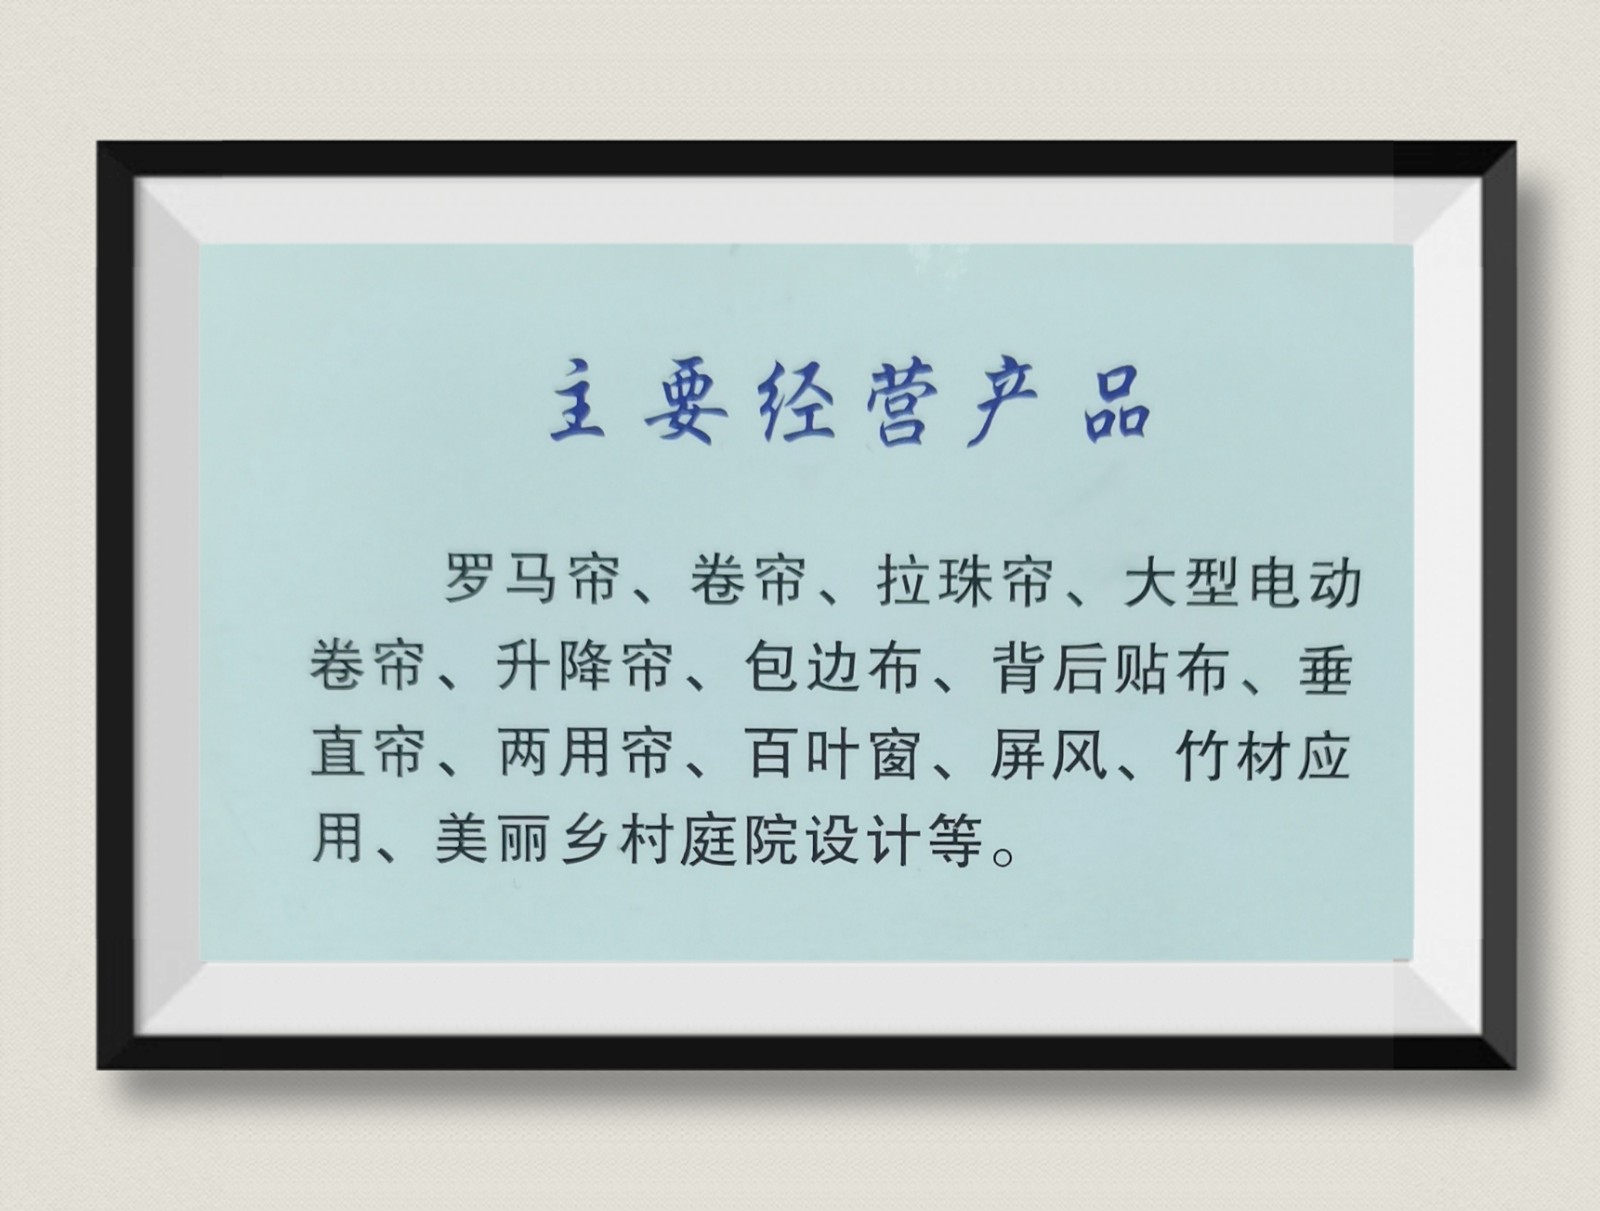 COTV全球直播-杭州富阳望月竹制品有限公司专业研发制作各种竹工艺制品，欢迎大家光临！